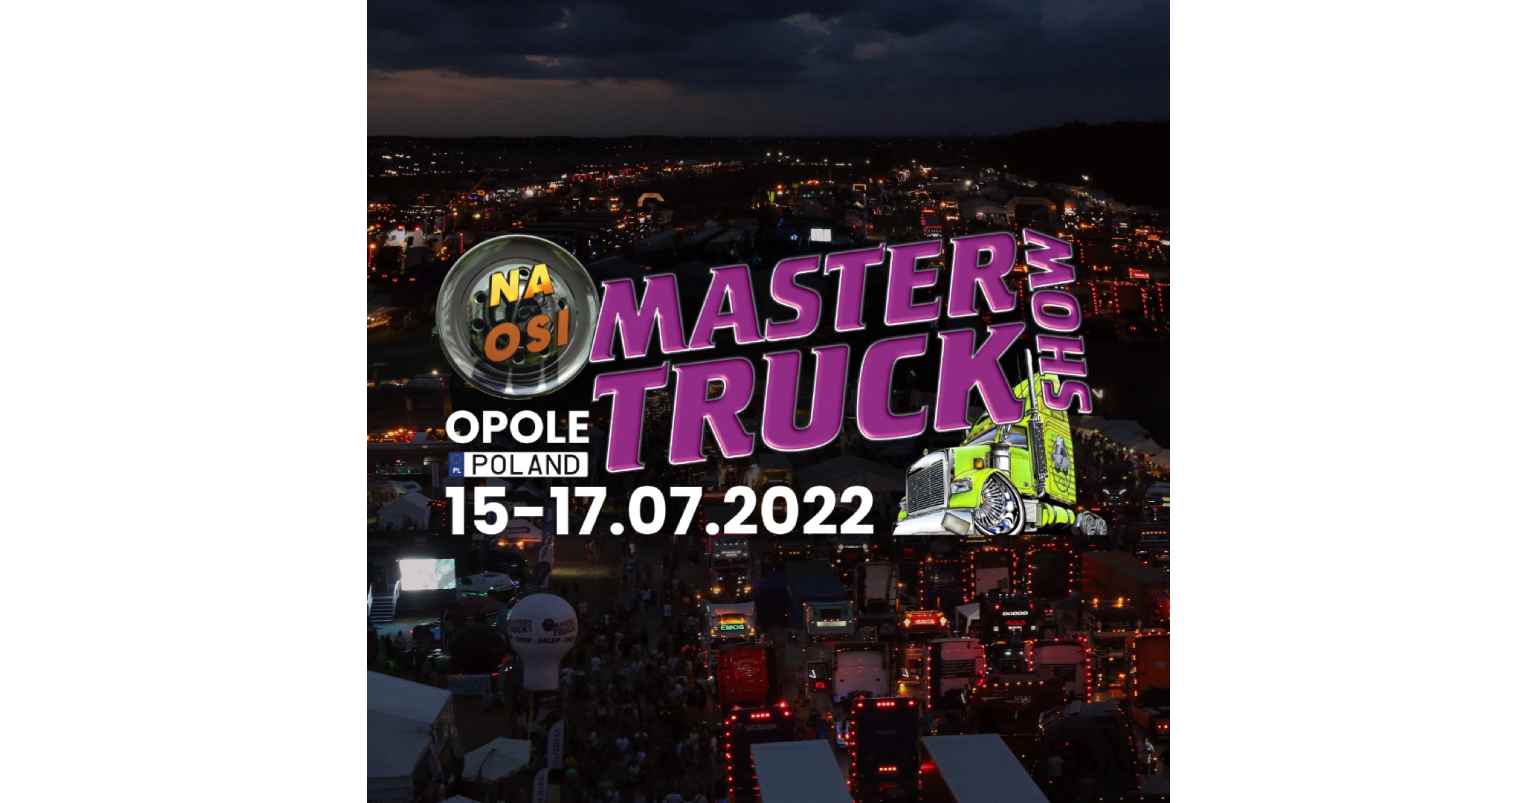 MASTER TRUCK SHOW jest największą imprezą wystawienniczo-rekreacyjną tego typu, która przyciąga każdego roku coraz większą ilość widzów oraz przedsiębiorców z całej Europy.